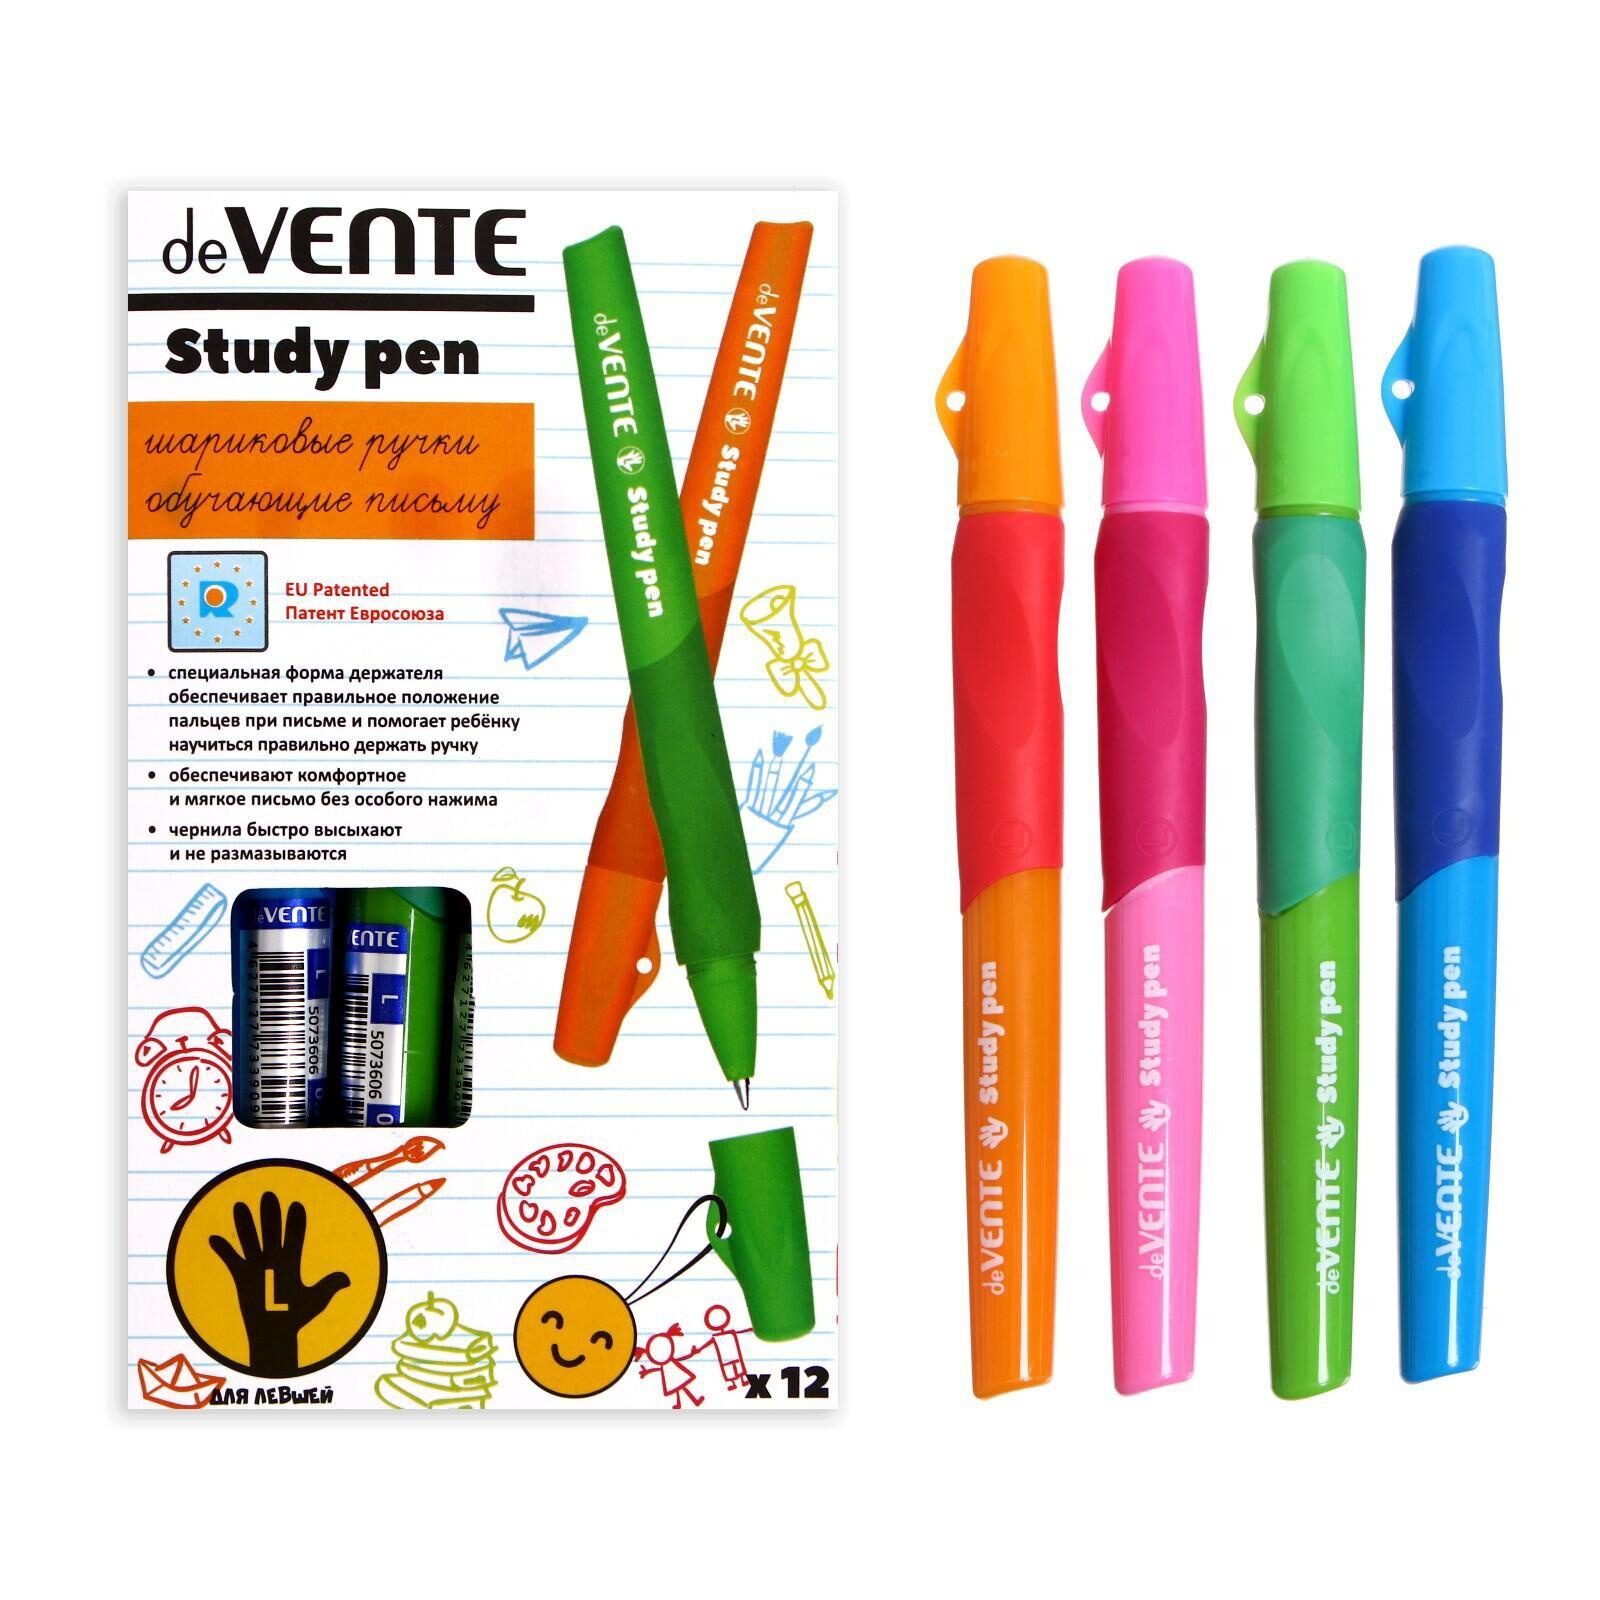 Ручка обучающая для левши deVENTE Study Pen, узел 0.7 мм, каучуковый держатель, чернила синие